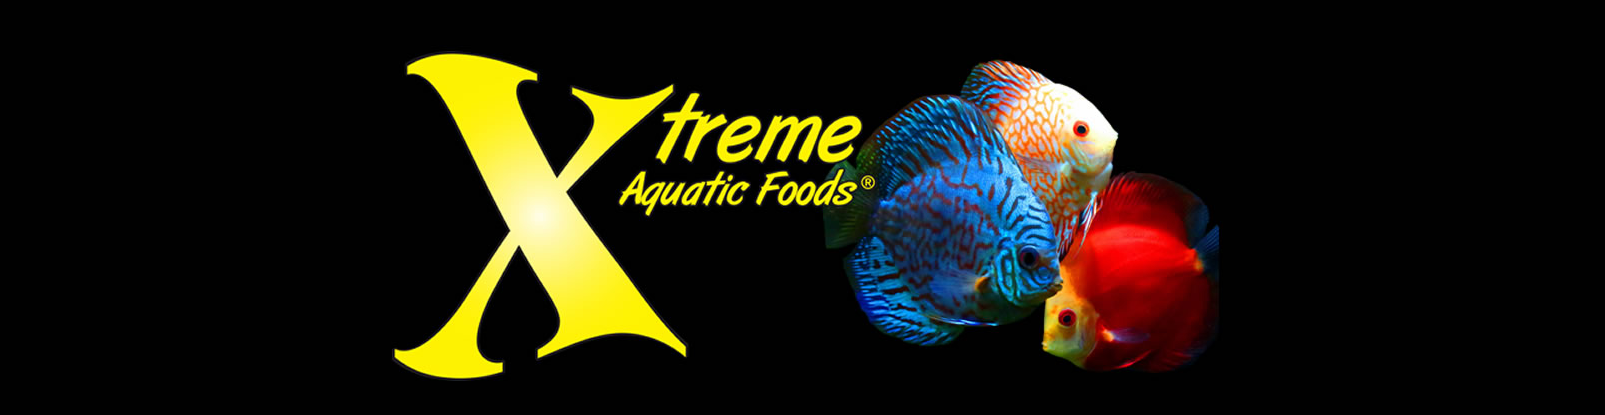 Xtreme Aquatic Foods